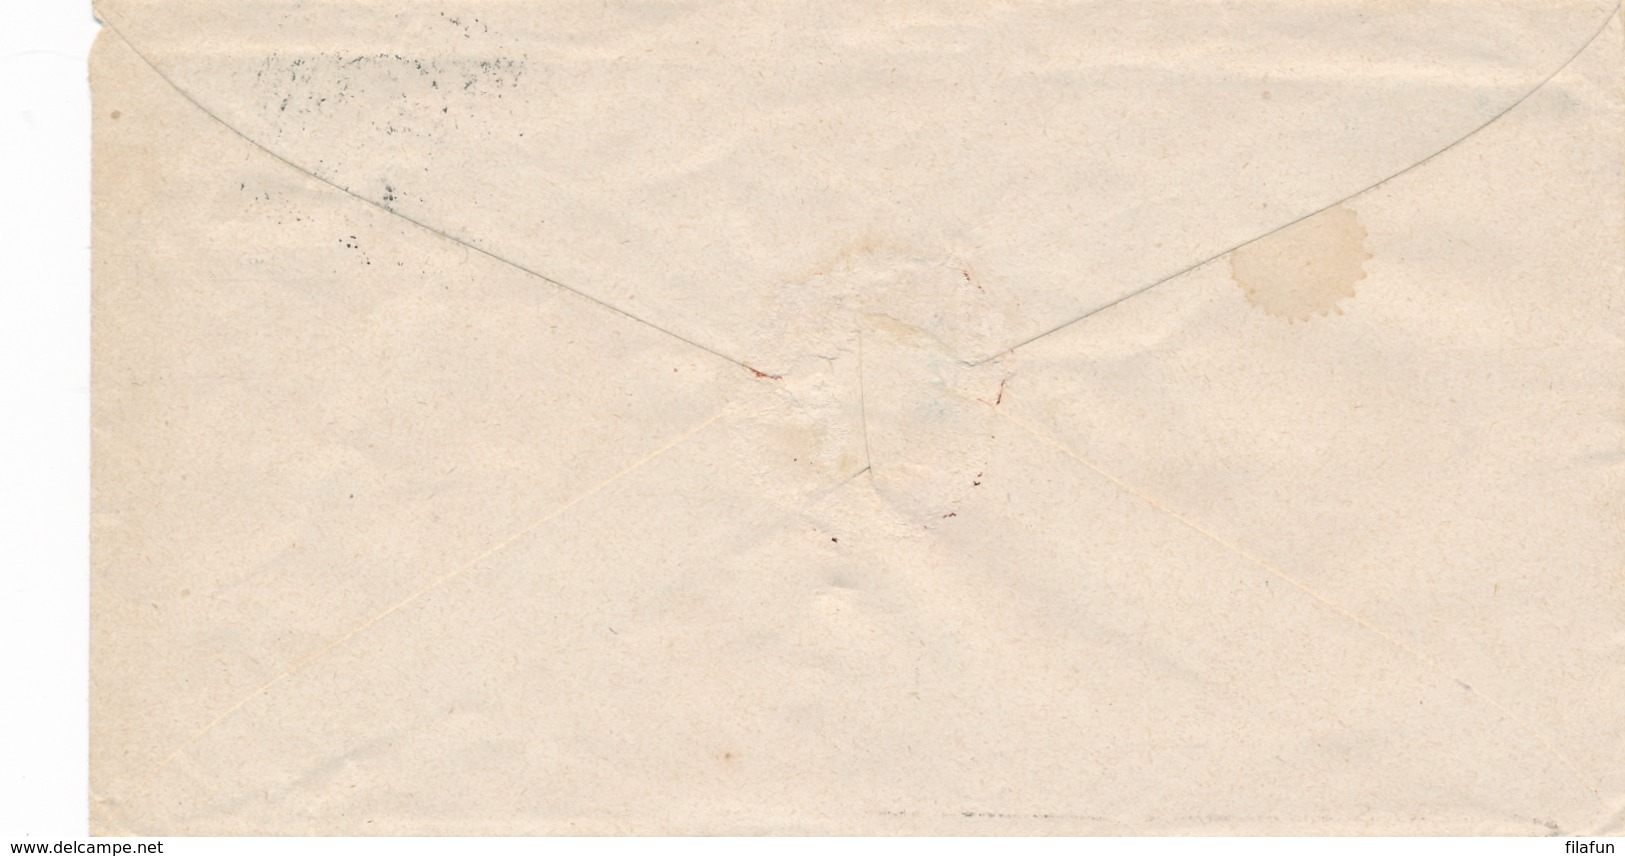 Nederlands Indië - 1905 - 20 Cent Bontkraag, Envelop G17 Als R-cover Van Prioktjahoe Via VK Bandjermasin Naar Kendangan - Niederländisch-Indien